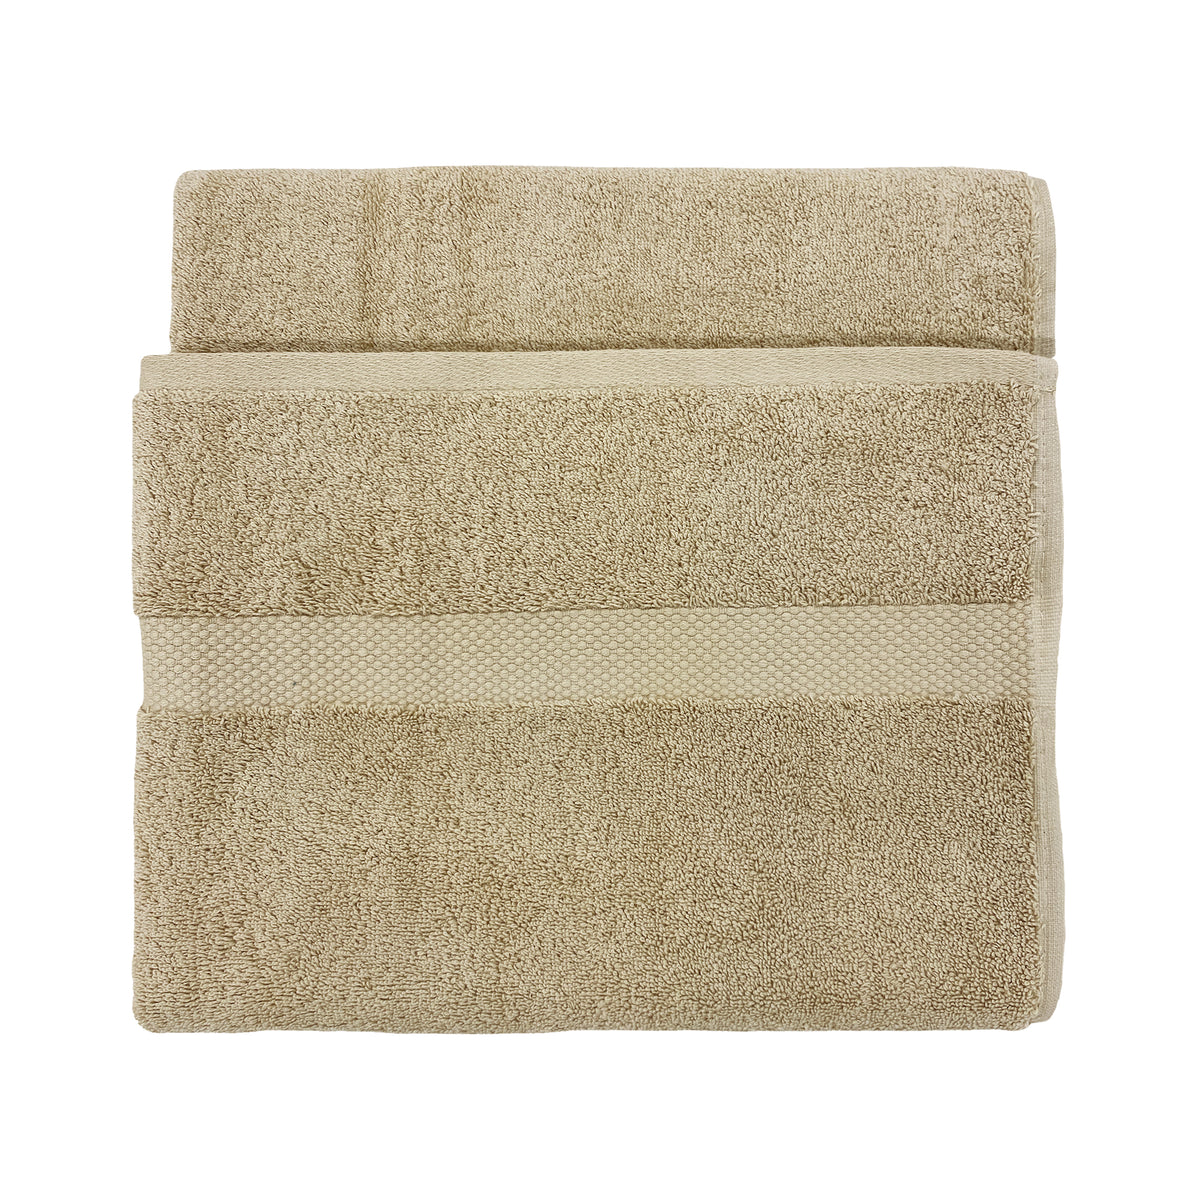 Loft 4pc Cotton Hand / Bath Towel Set